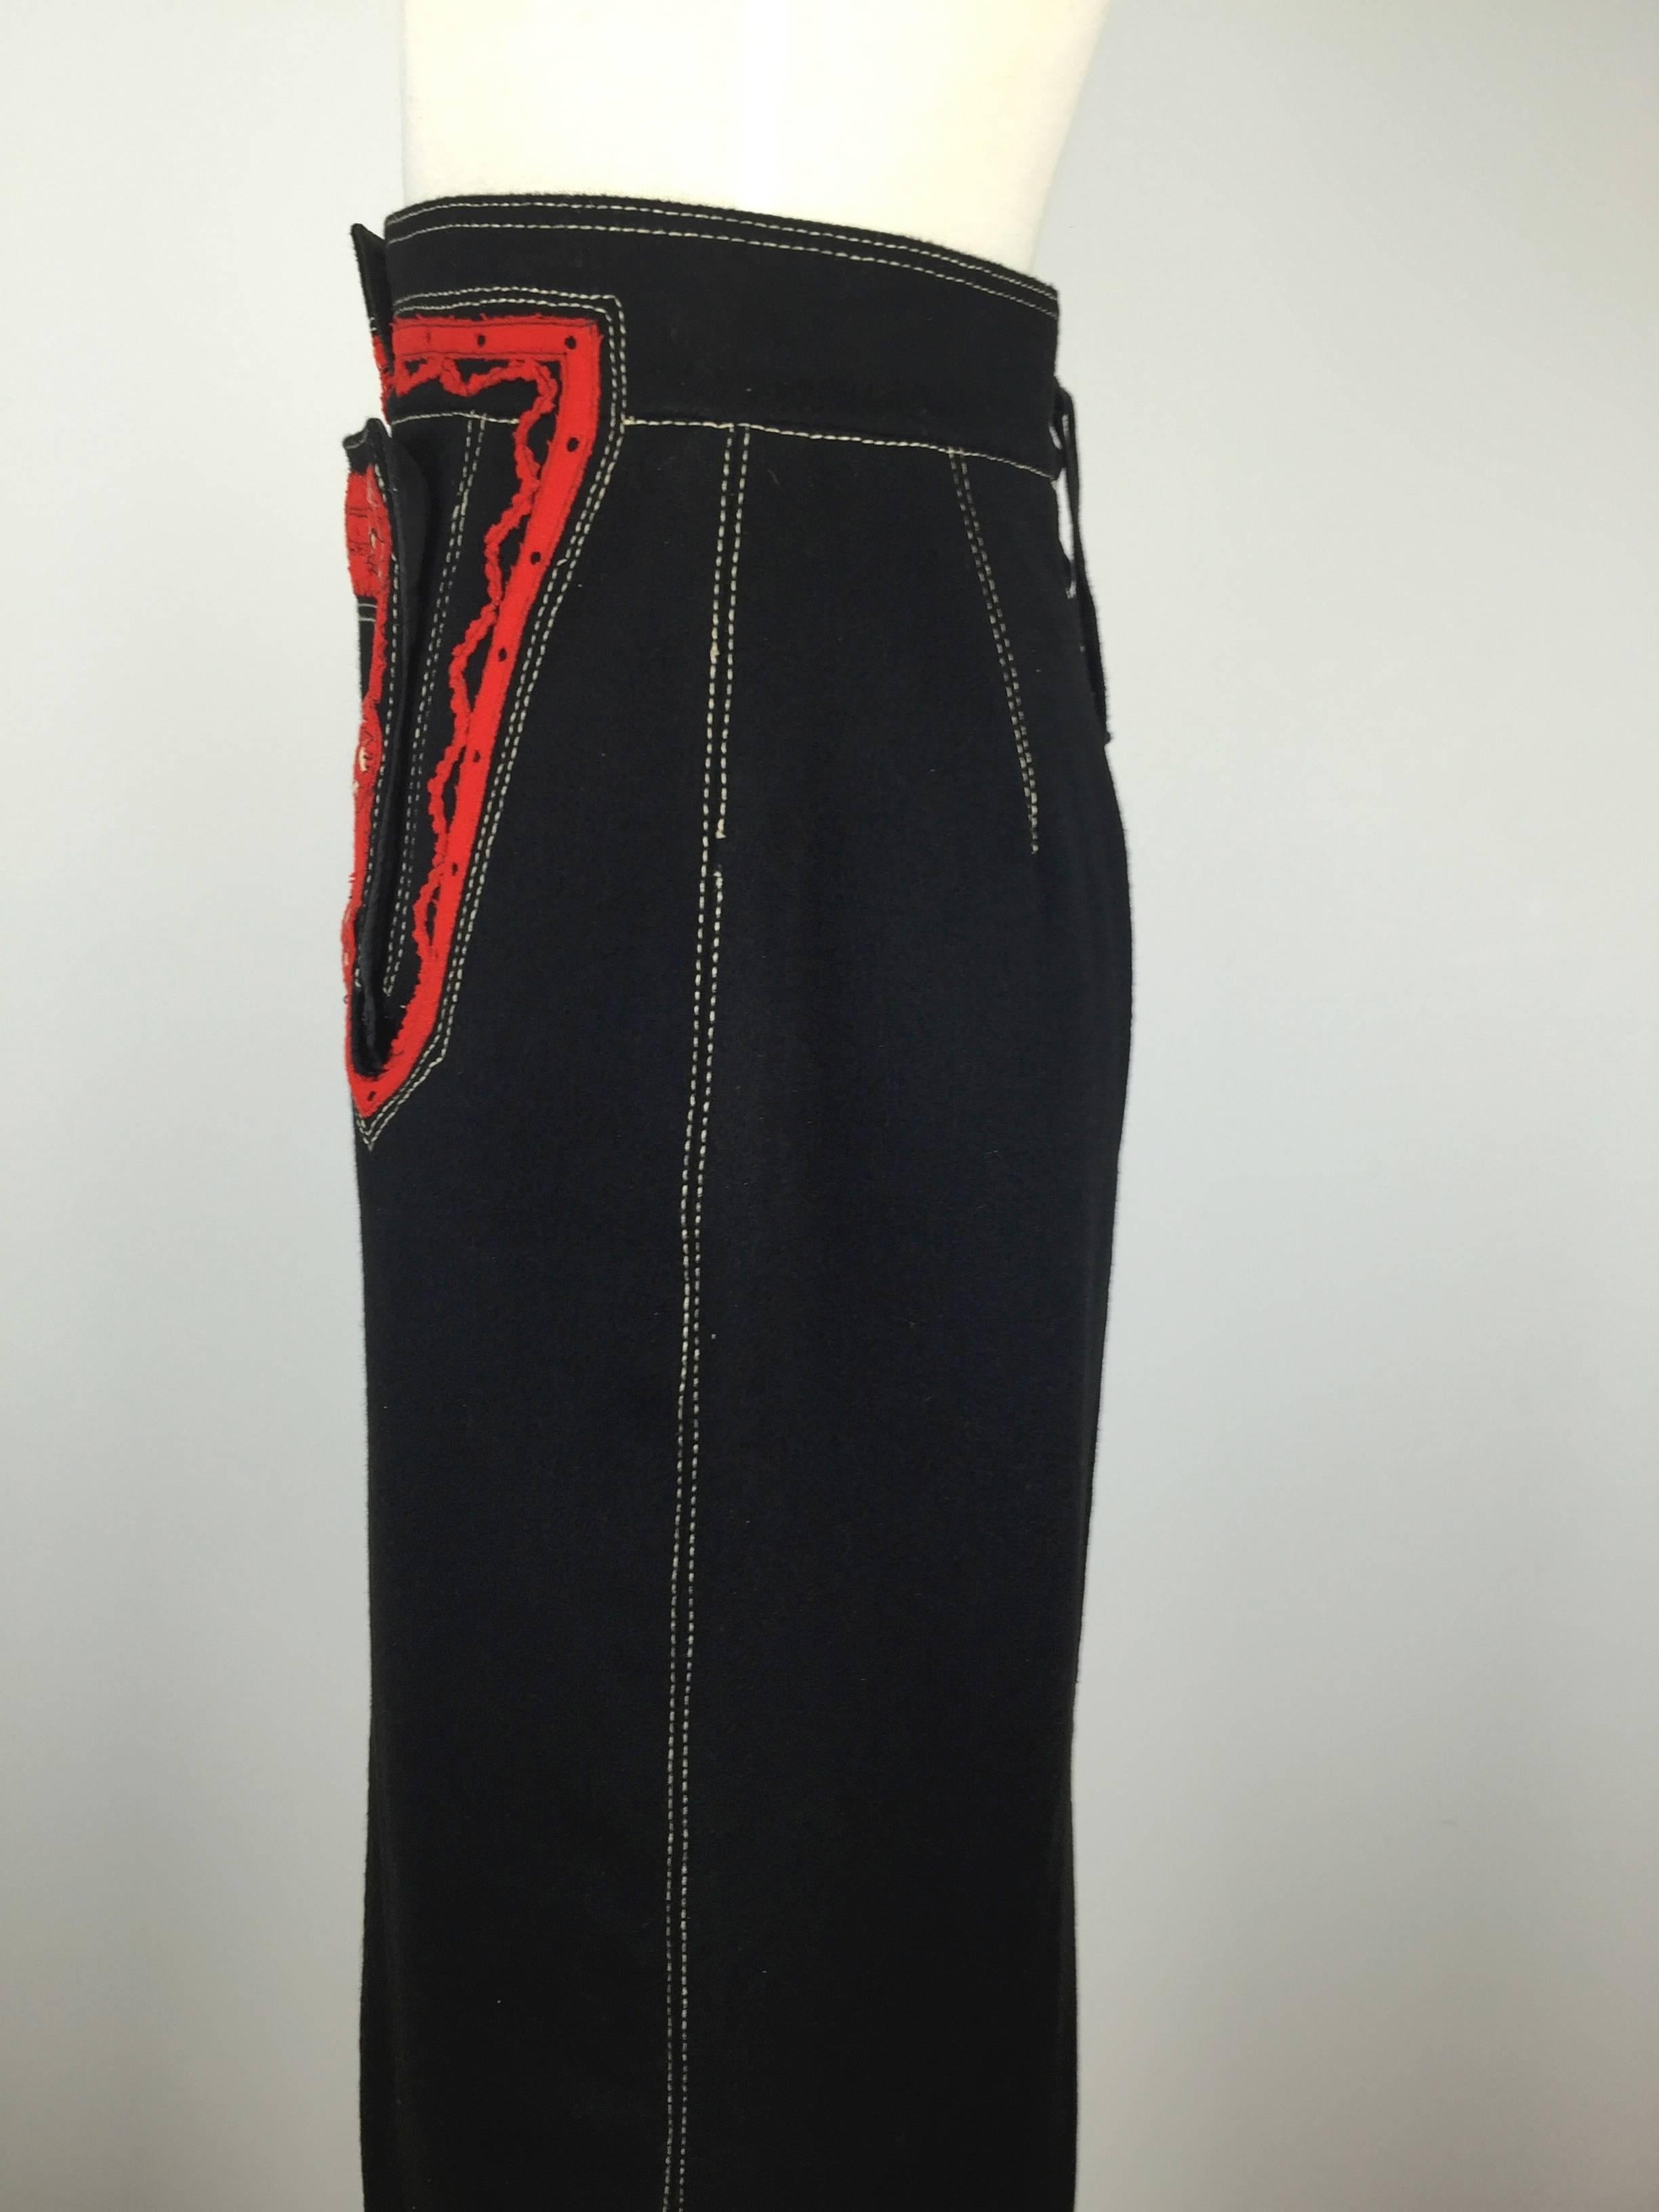  Jean Paul Gaultier Black Wool Folkloric Long Skirt. 4